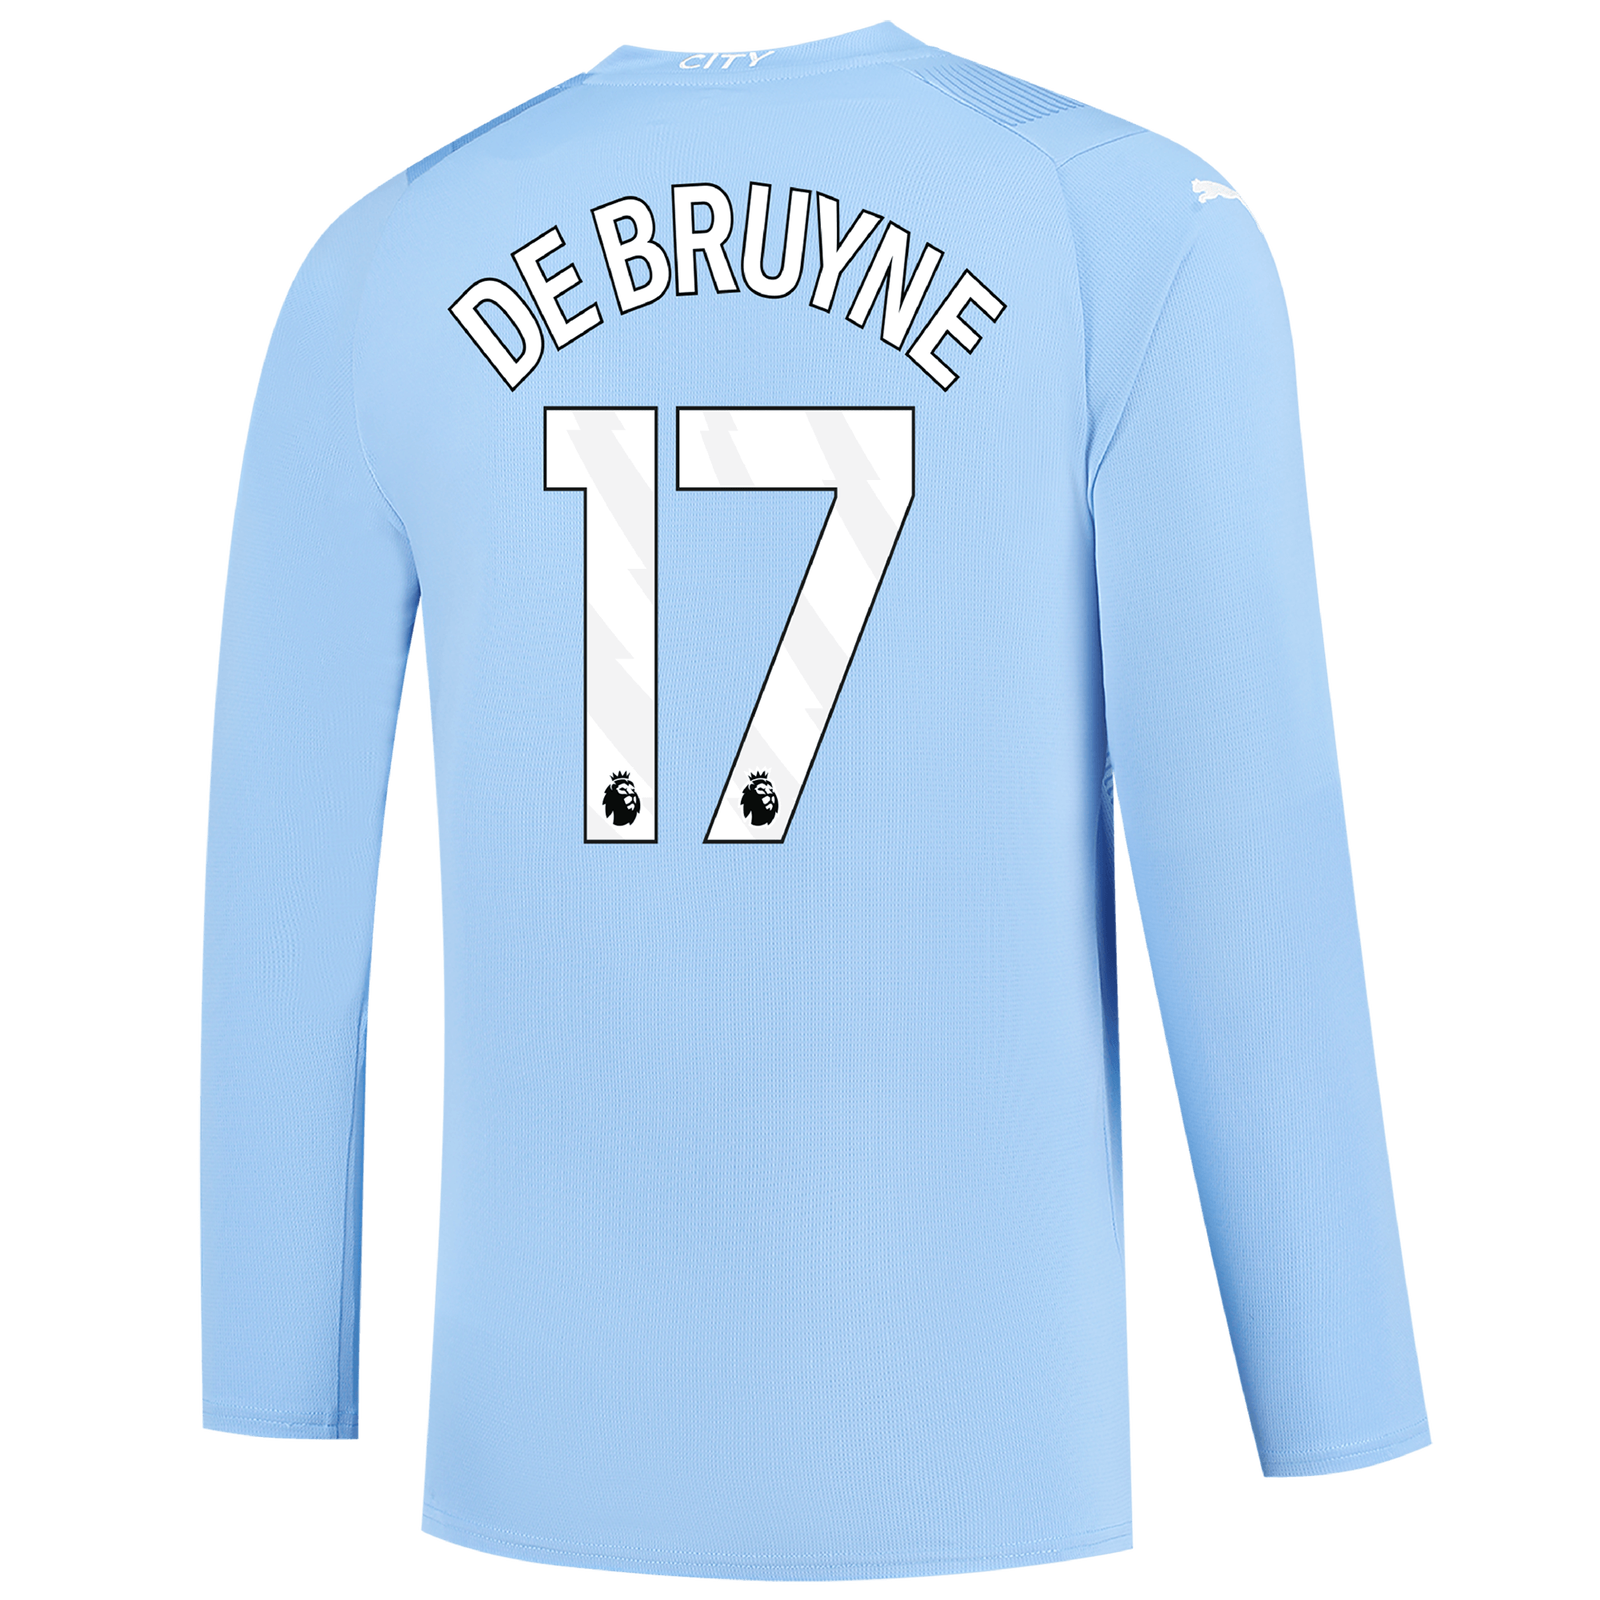 DE BRUYNE #17 HAALAND Manchester City Soccer Jersey Football Shirt 2023/2024